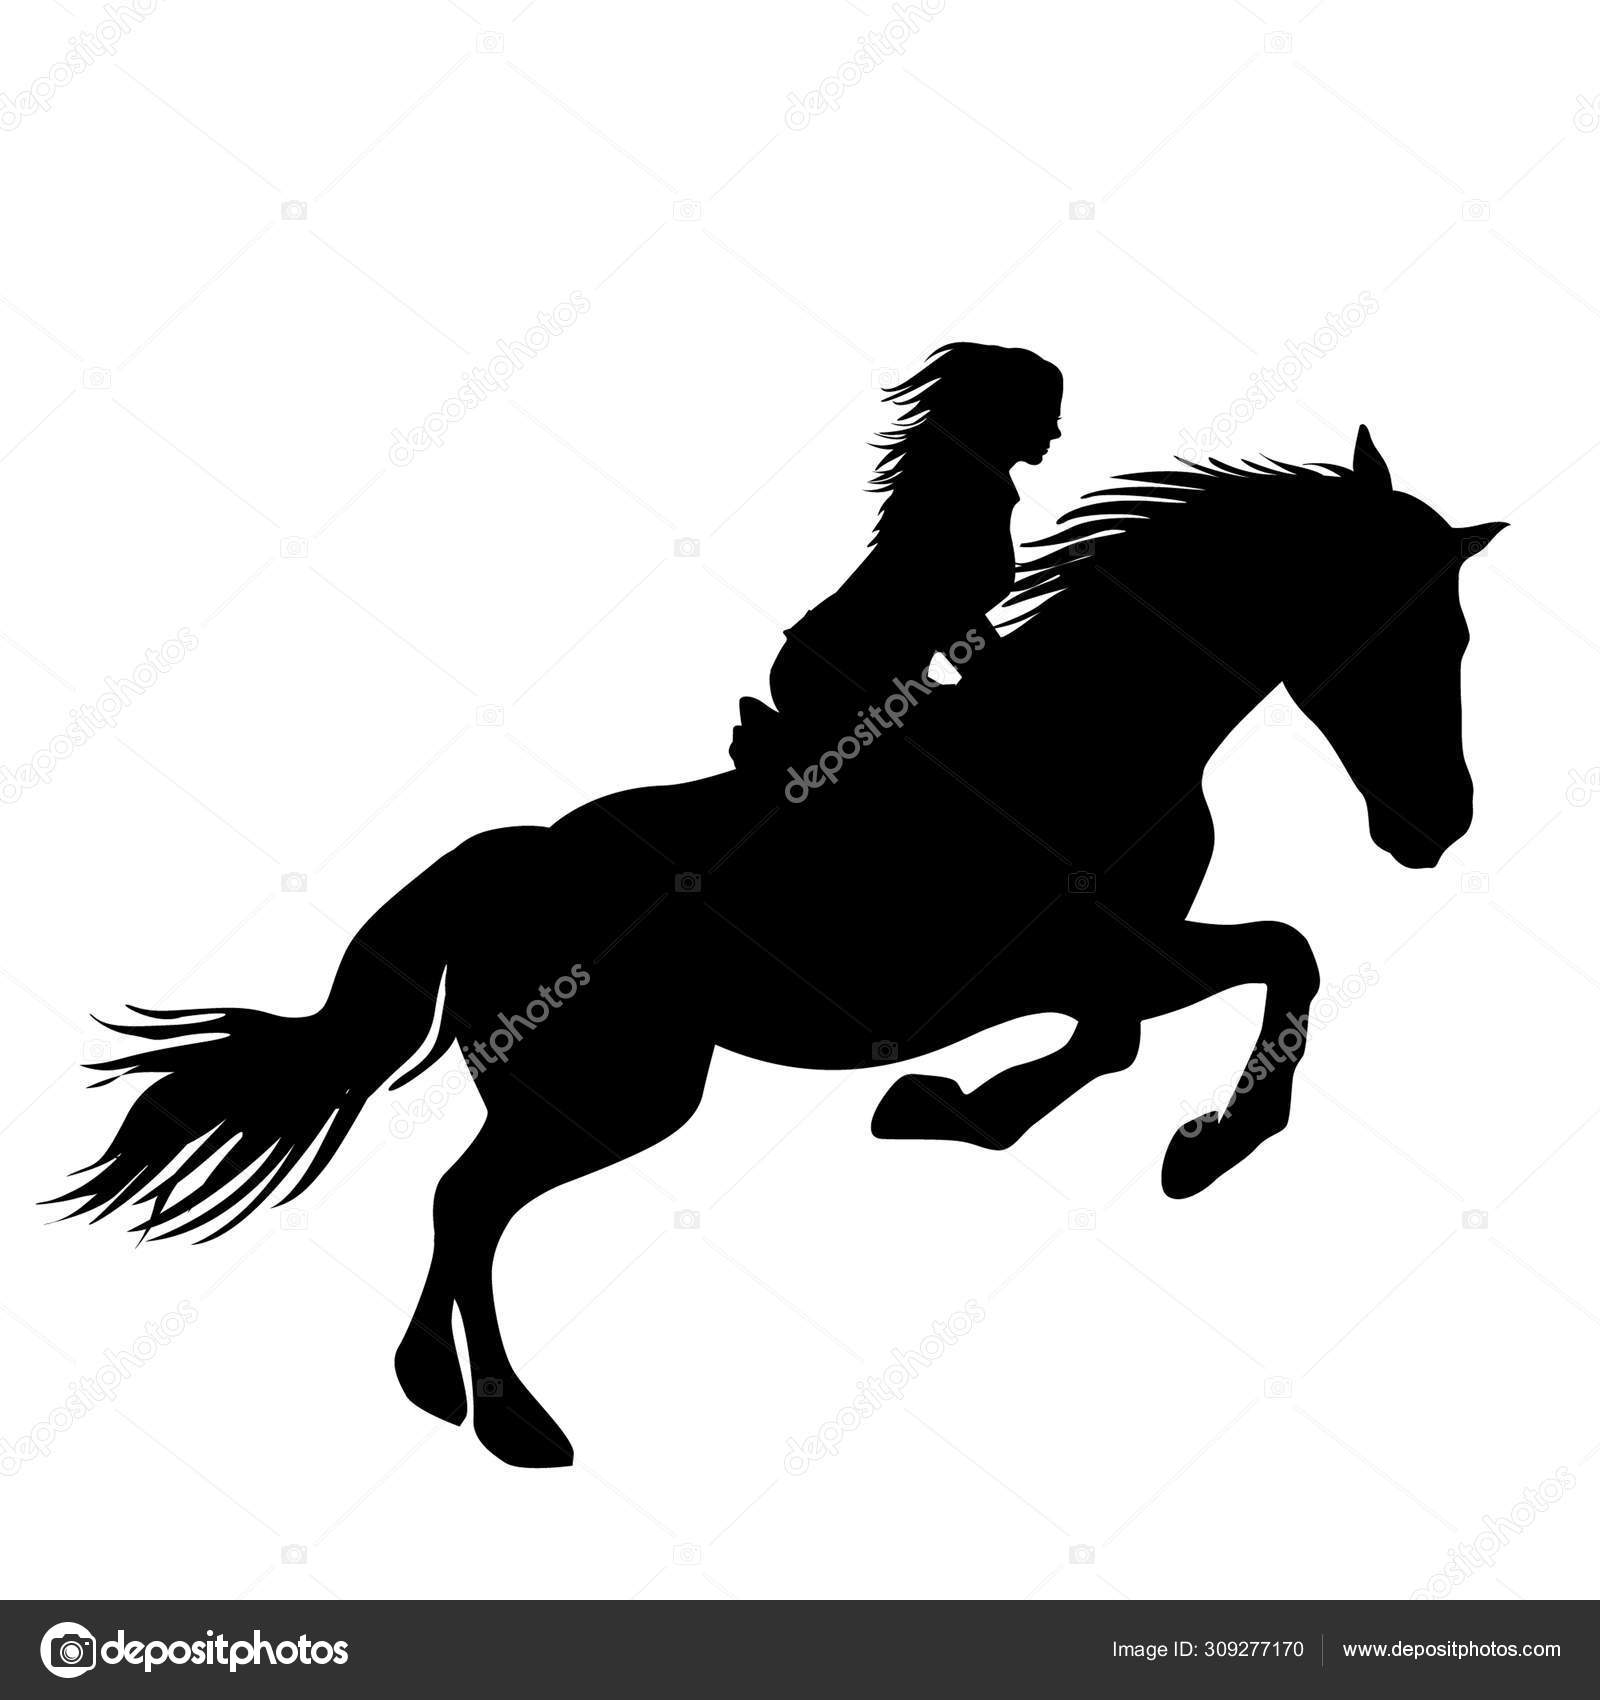 Há uma mulher montando um cavalo pulando sobre um obstáculo